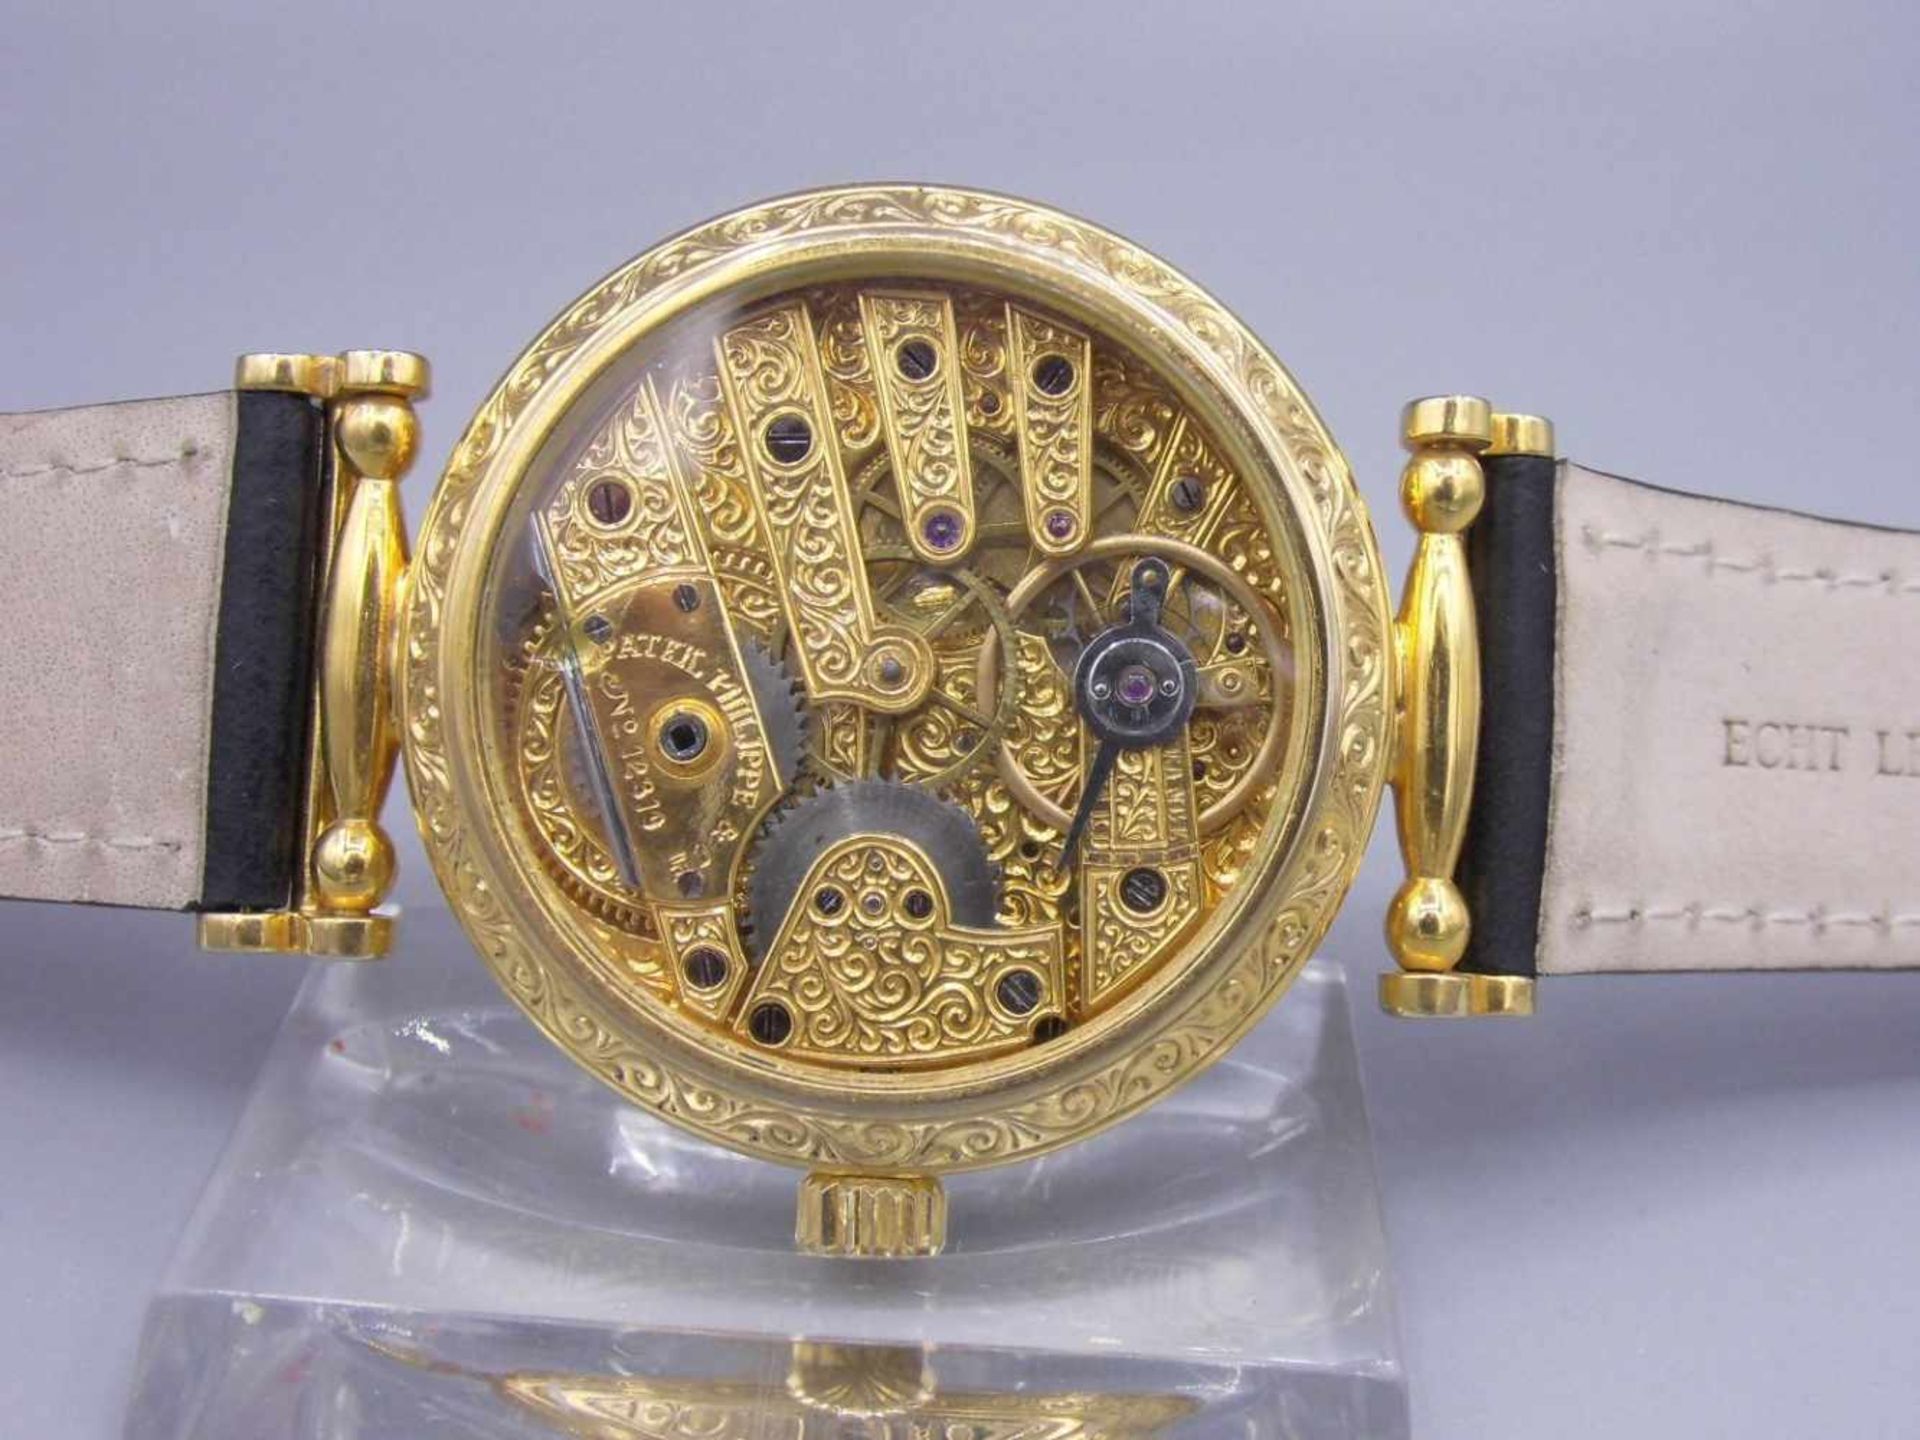 PATEK PHILIPPE ARMBANDUHR / MARIAGE / wristwatch, vergoldet, auf dem Zifferblatt bezeichnet "Patek - Image 5 of 5